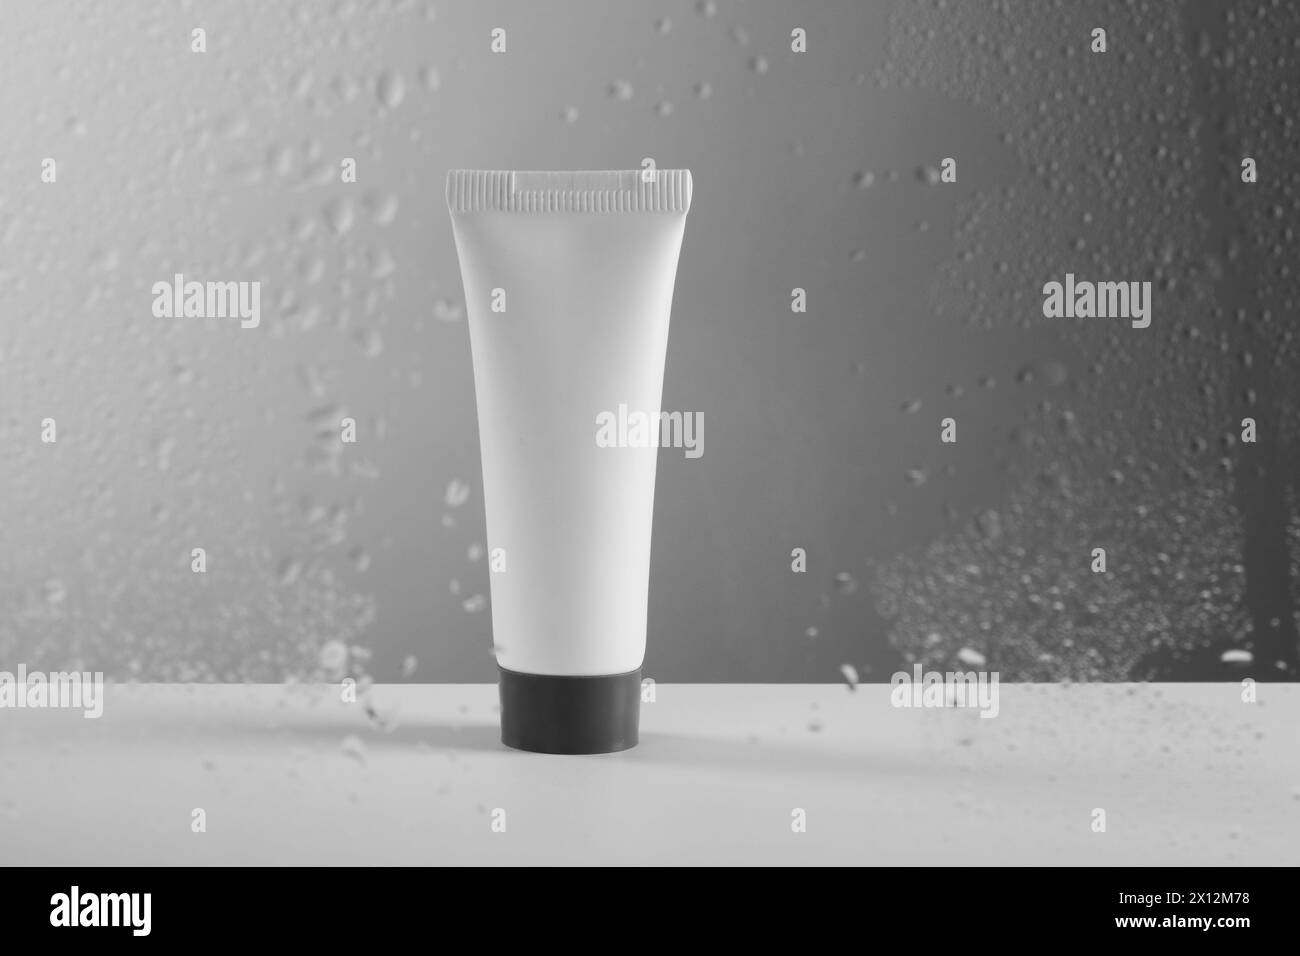 Röhrchen mit Feuchtigkeitscreme auf grauem Hintergrund, Blick durch nasses Glas Stockfoto